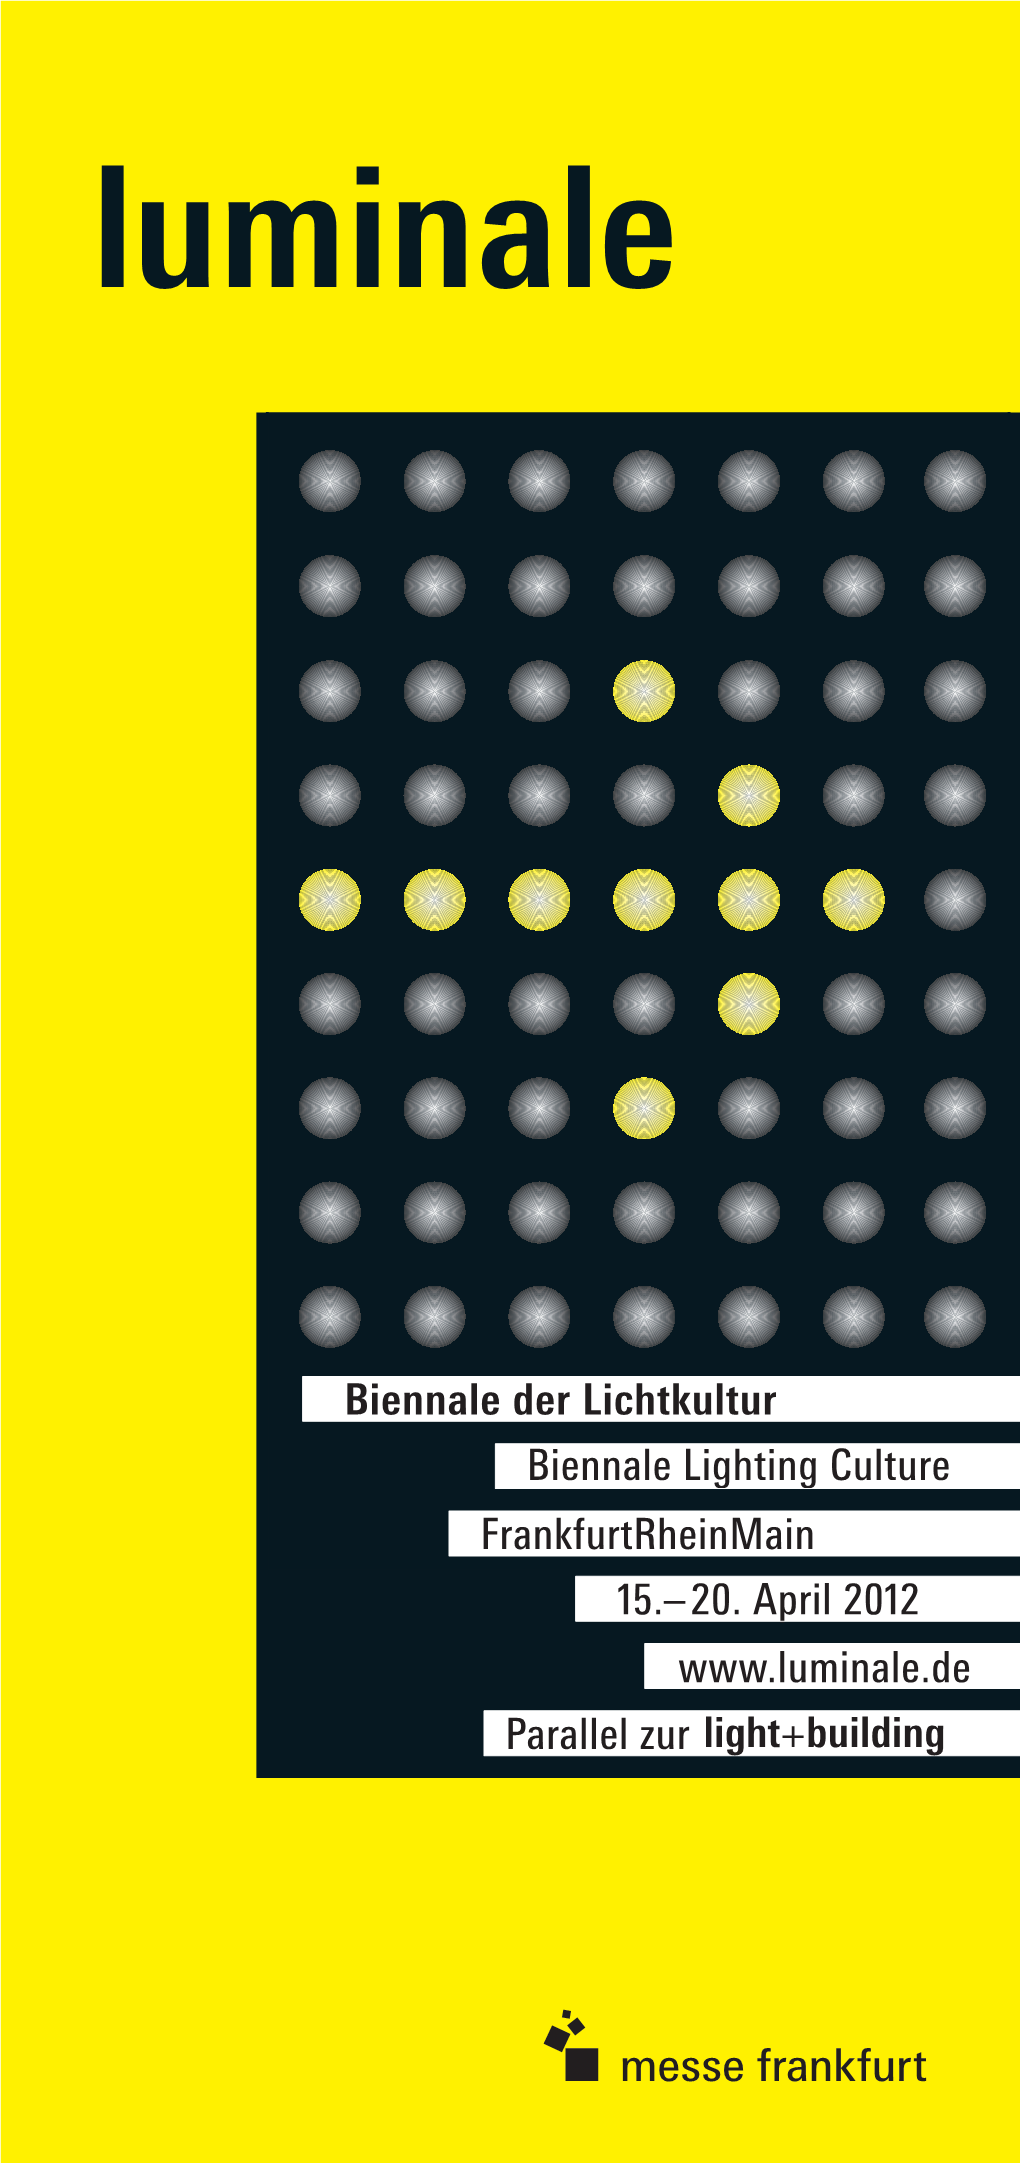 Frankfurtrheinmain 15.–20. April 2012 Biennale